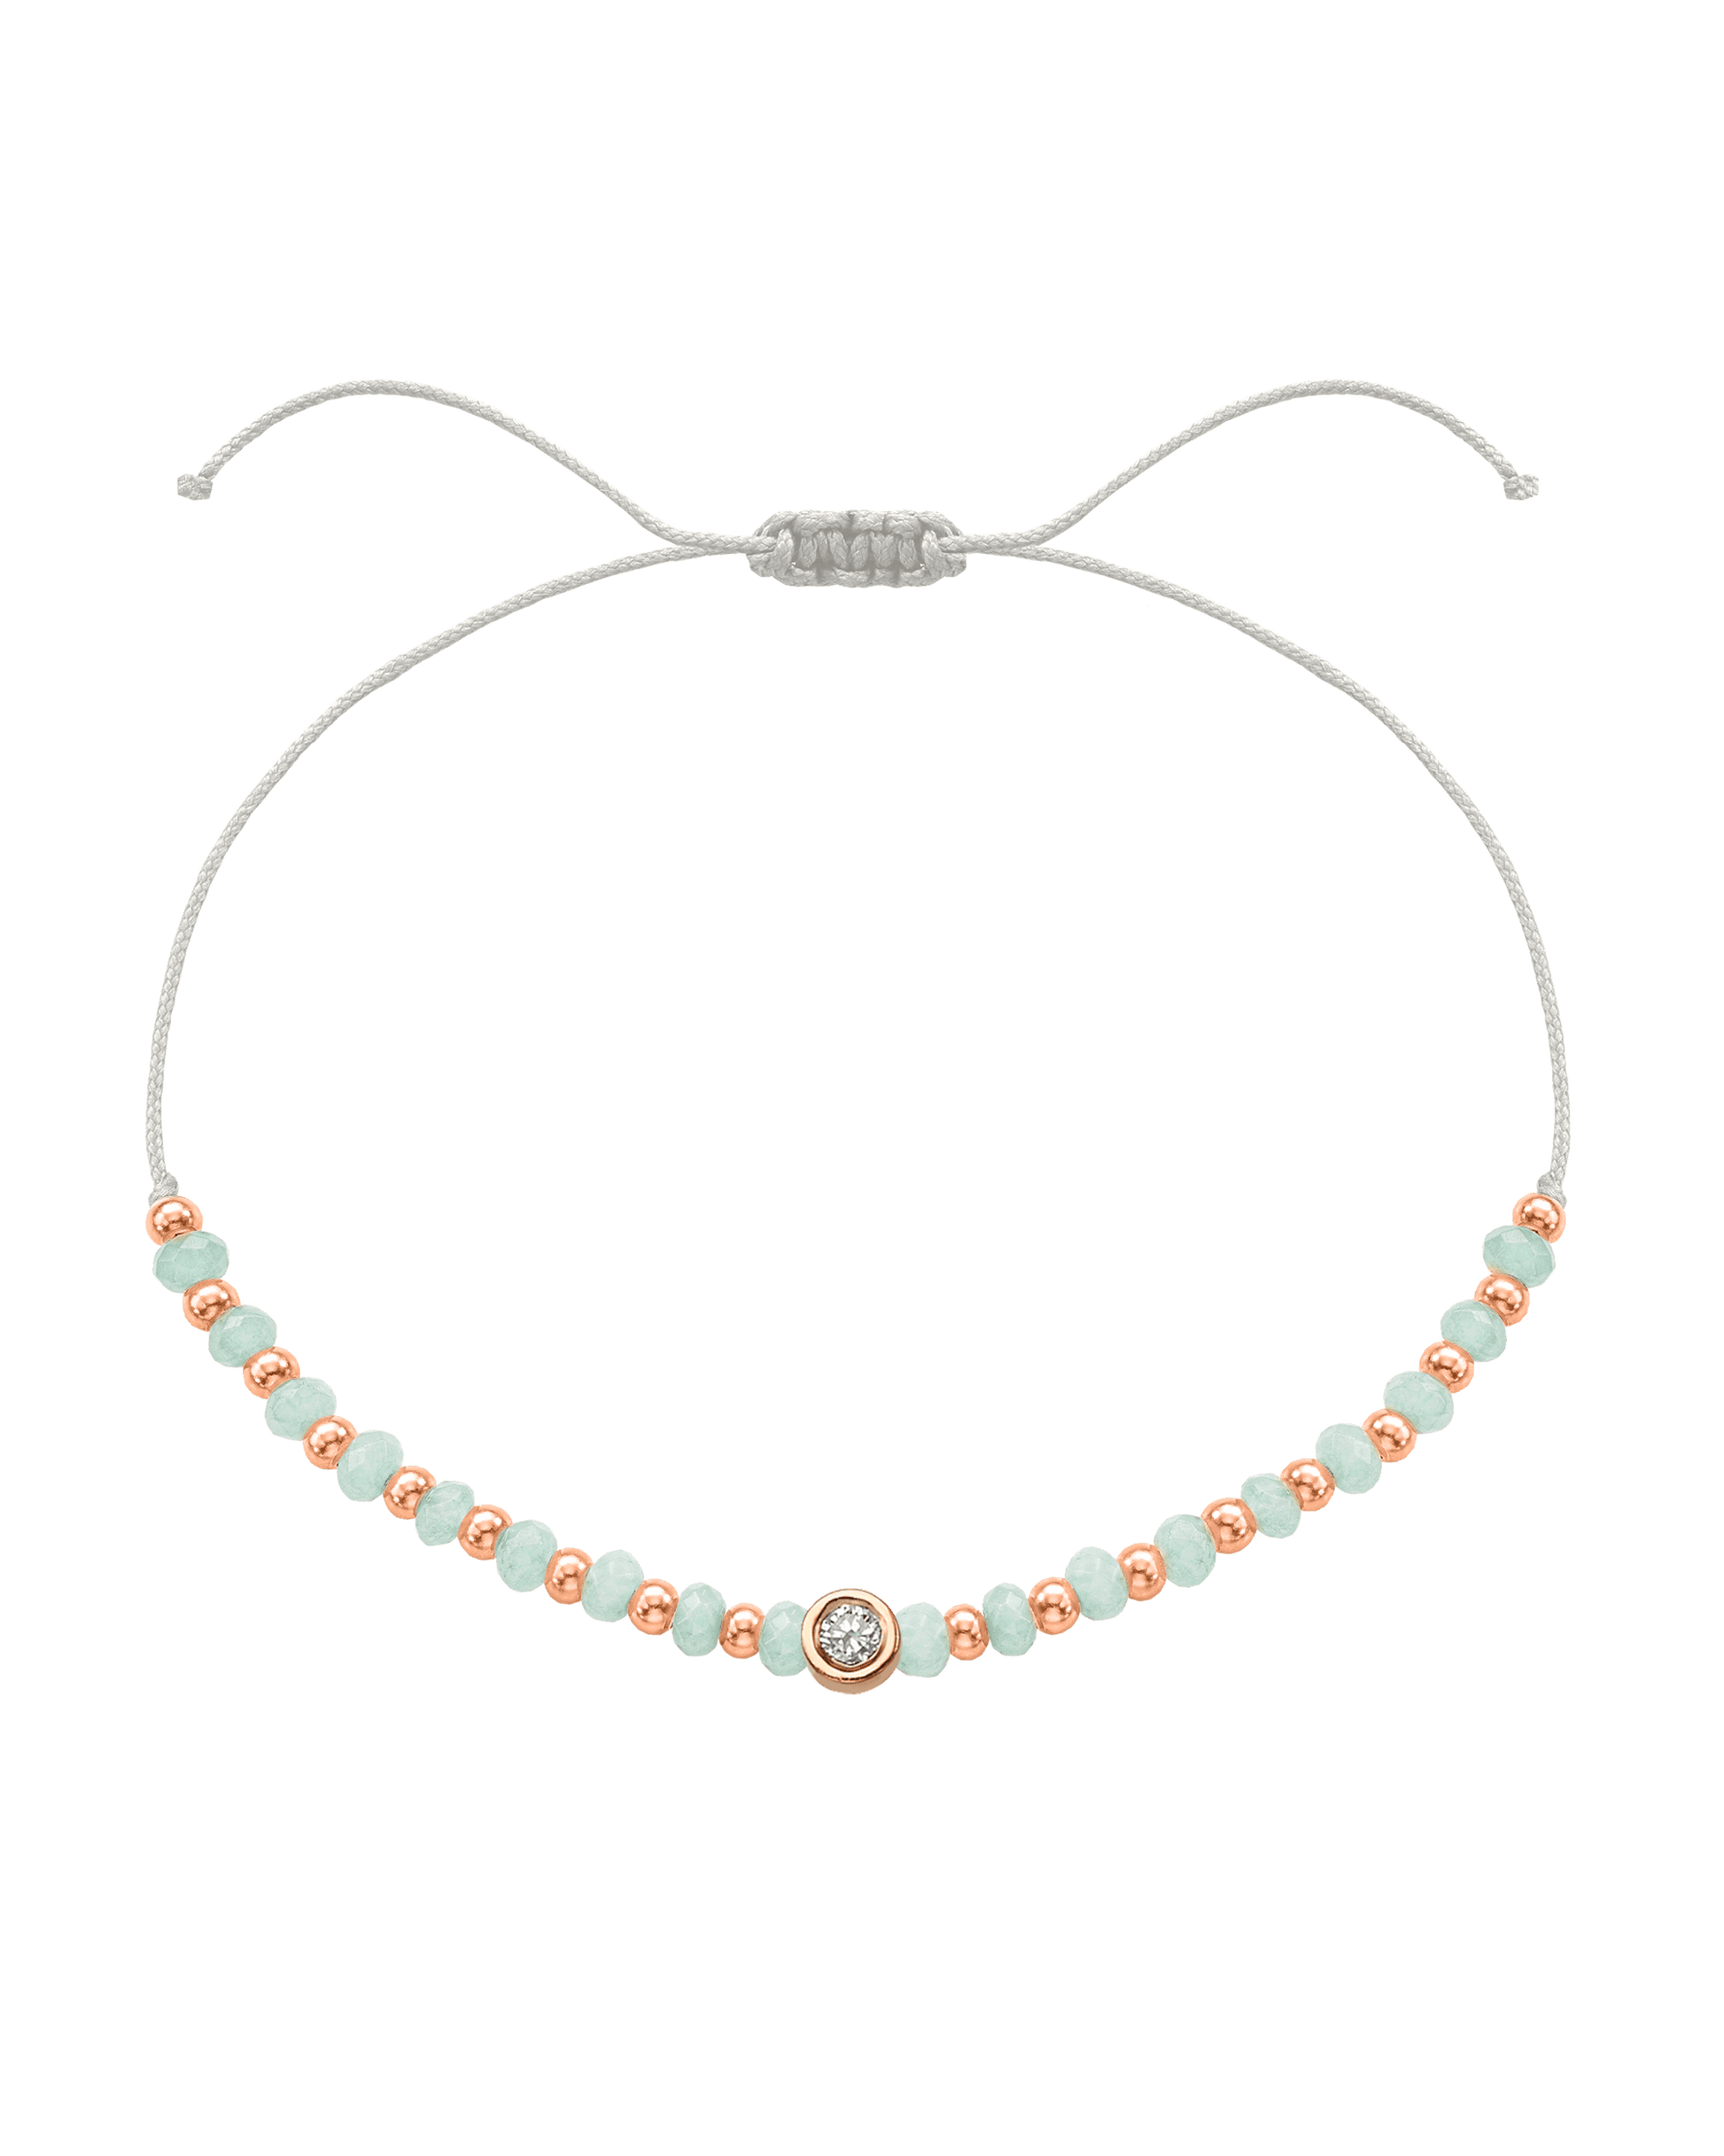 Apatite Gemstone String of Love Bracelet for Inspiration - 14K Rose Gold Bracelets 14K Solid Gold Pearl Medium: 0.04ct 